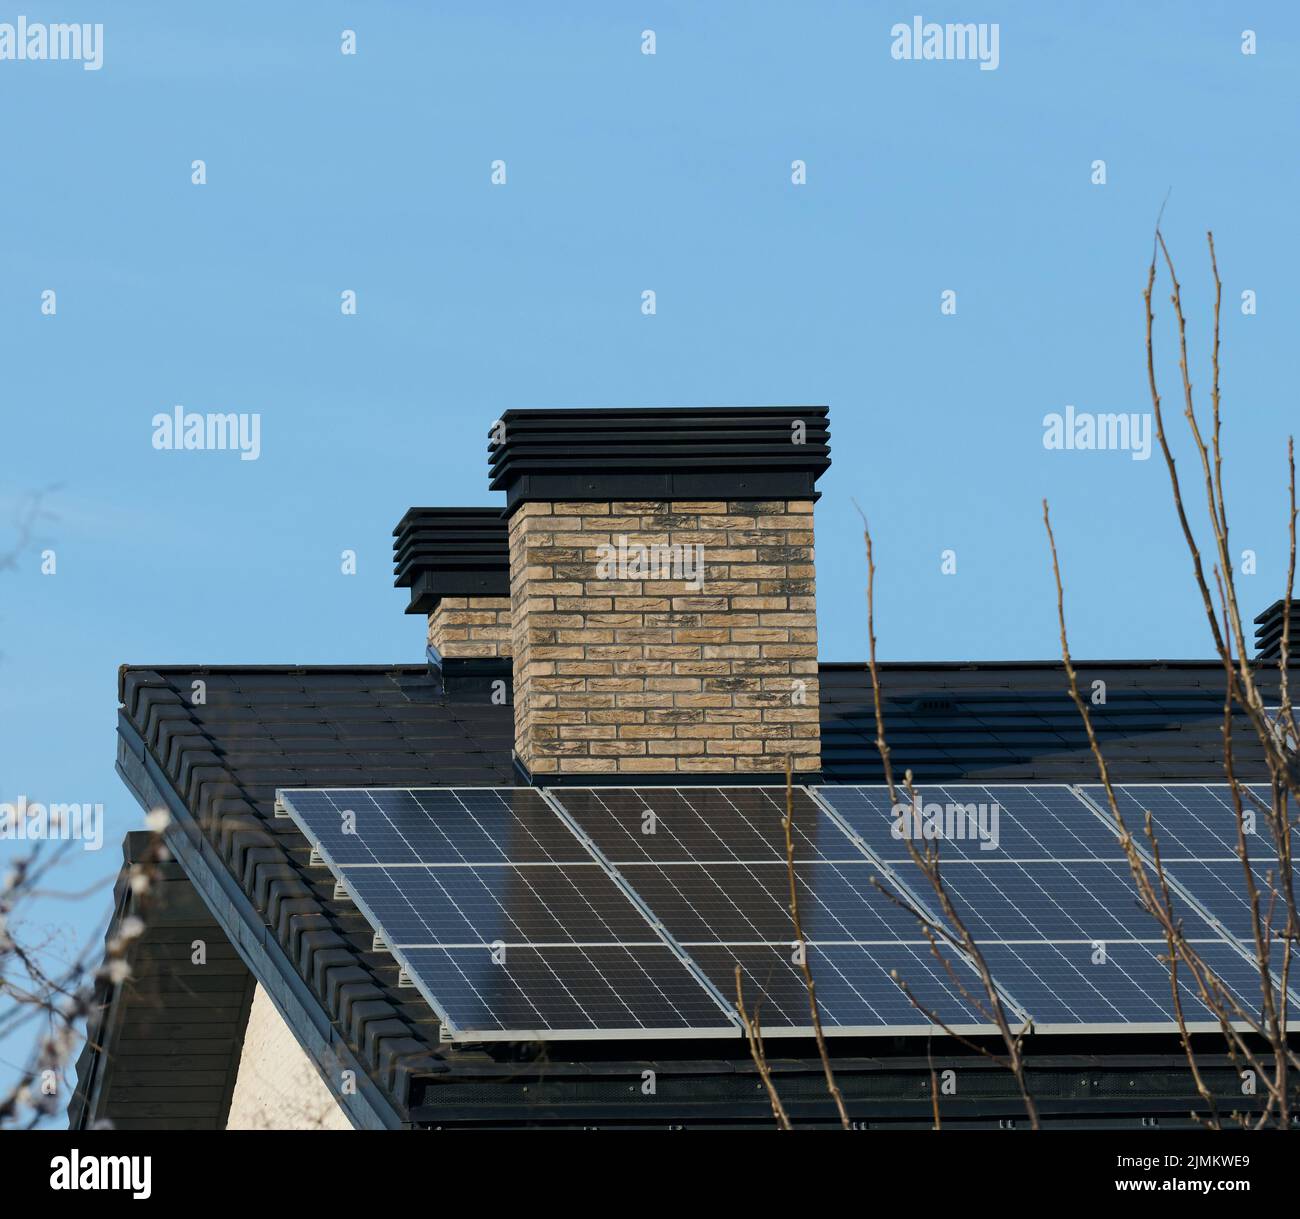 Dach eines Wohngebäudes mit Solarzellen. Konzept für grüne Energie und Energieunabhängigkeit Stockfoto